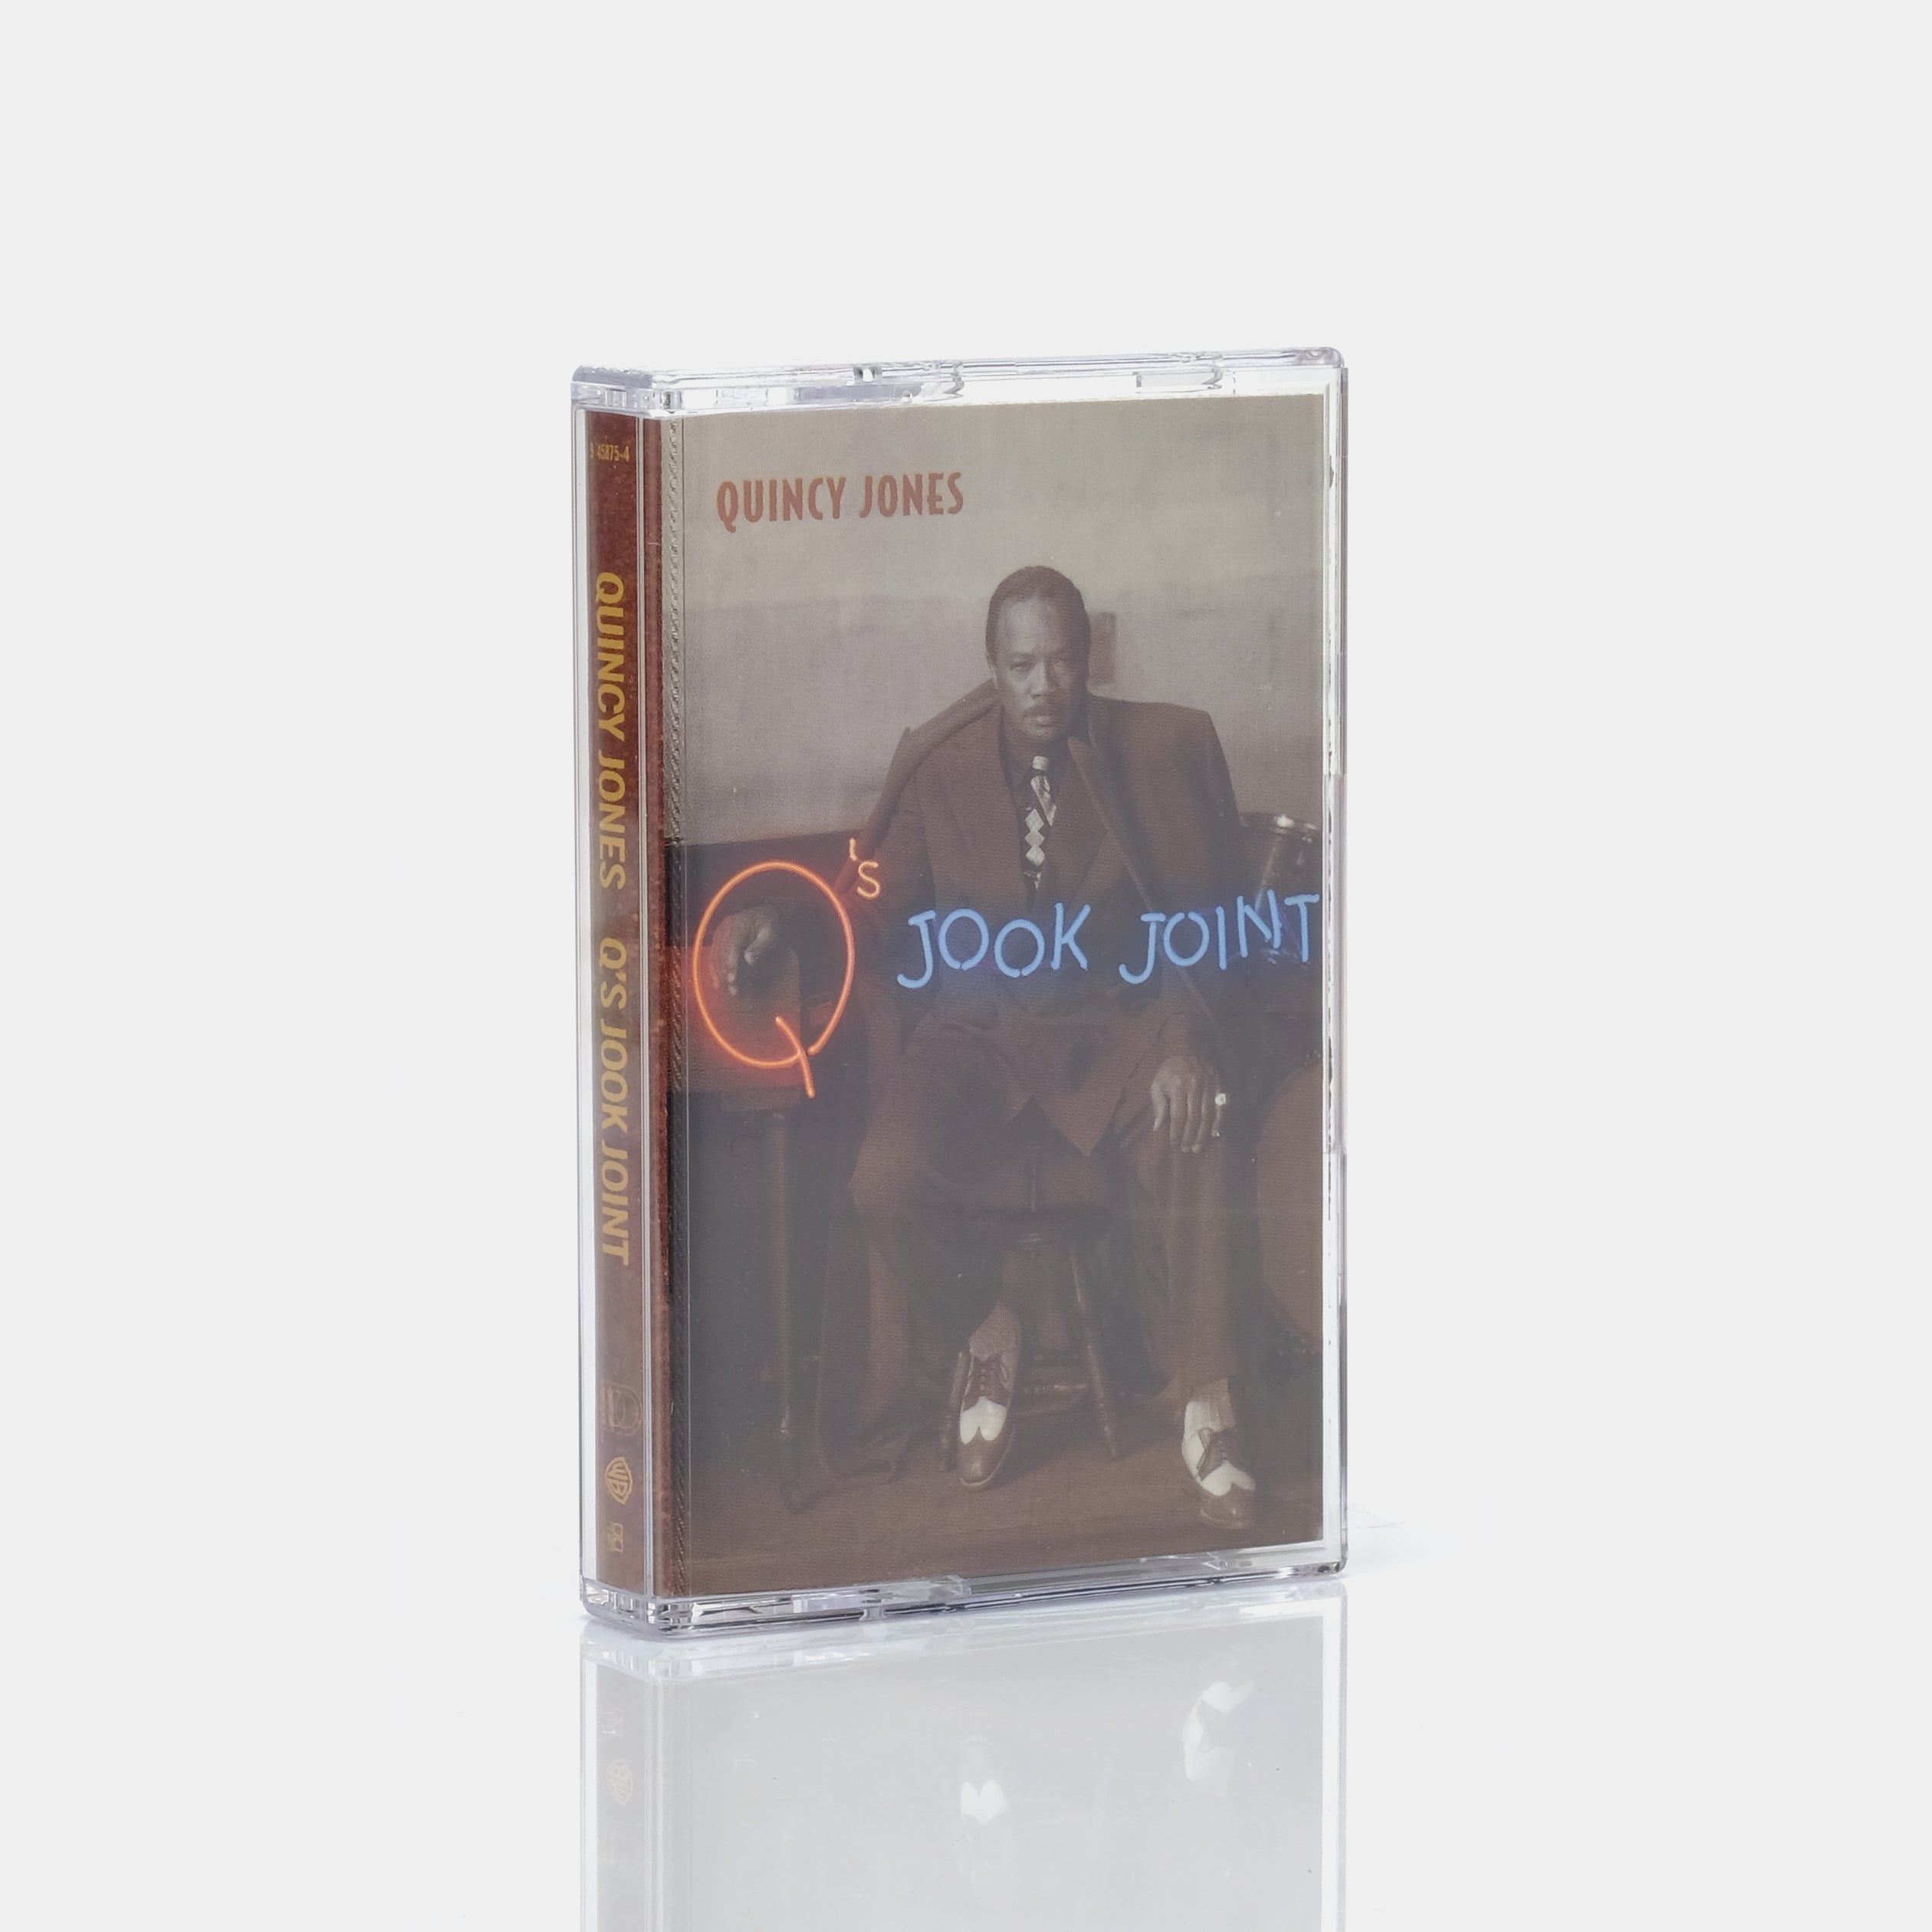 Quincy Jones - Q's Jook Joint Cassette Tape